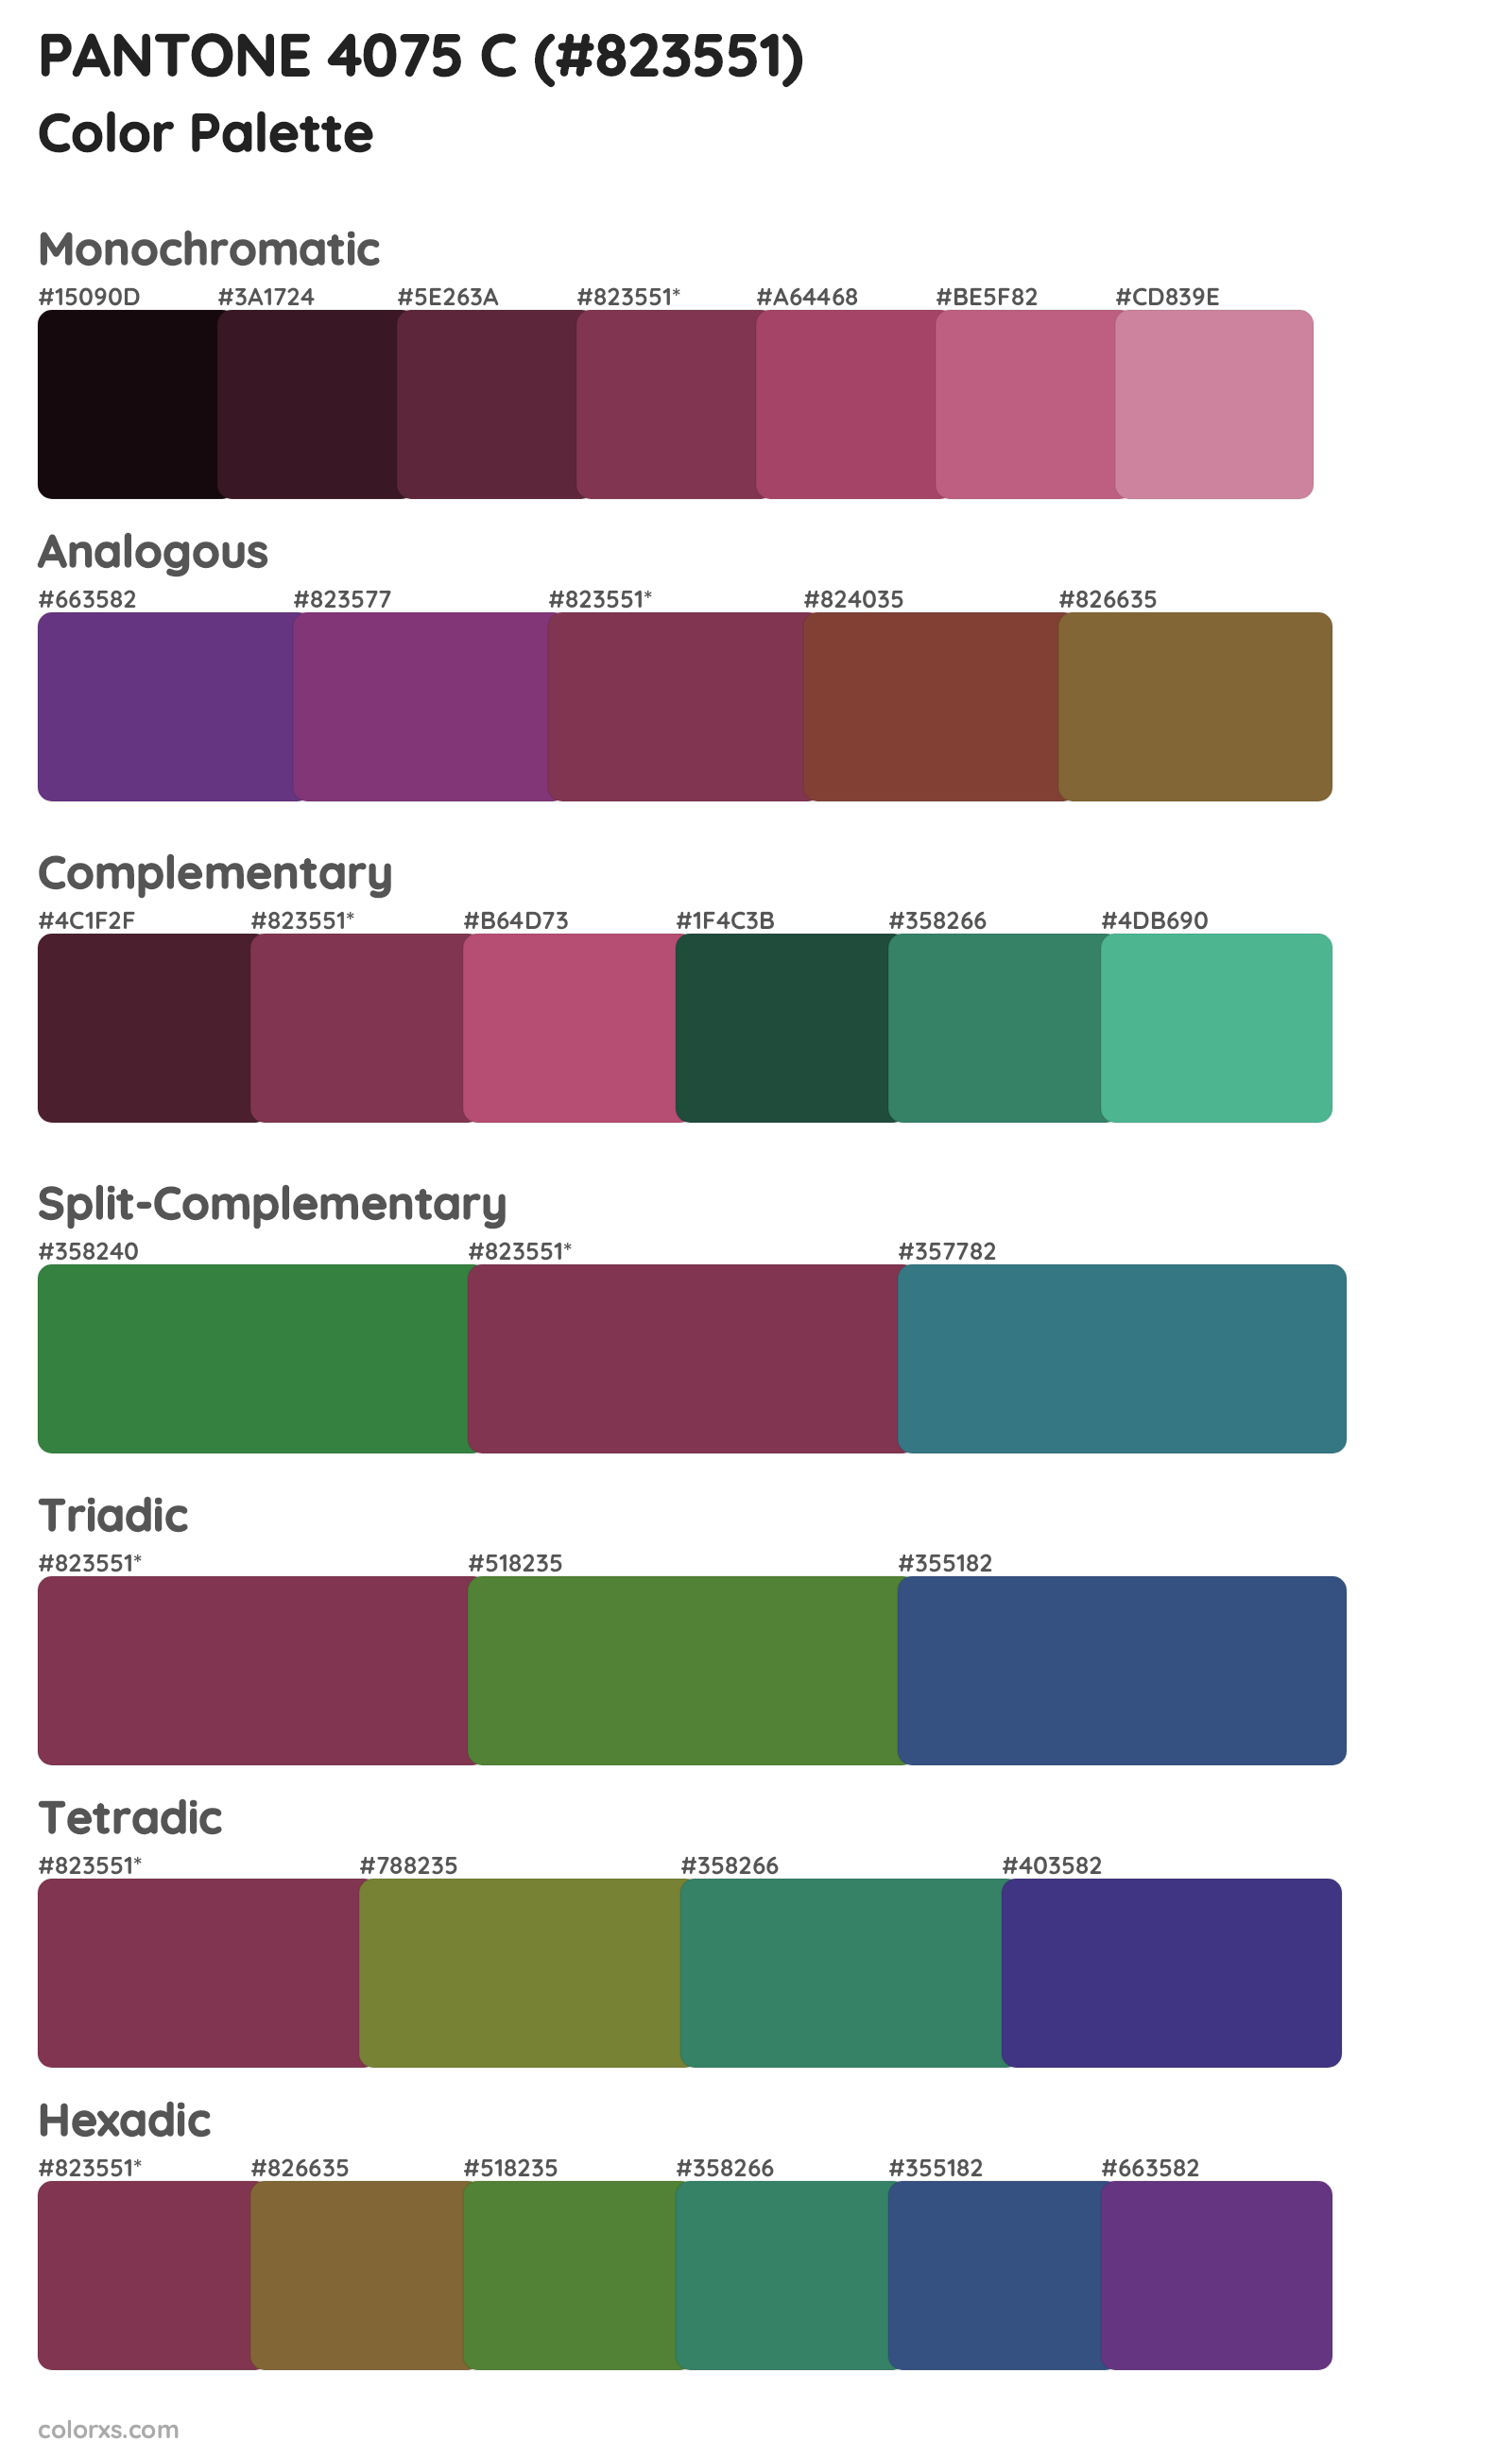 PANTONE 4075 C Color Scheme Palettes